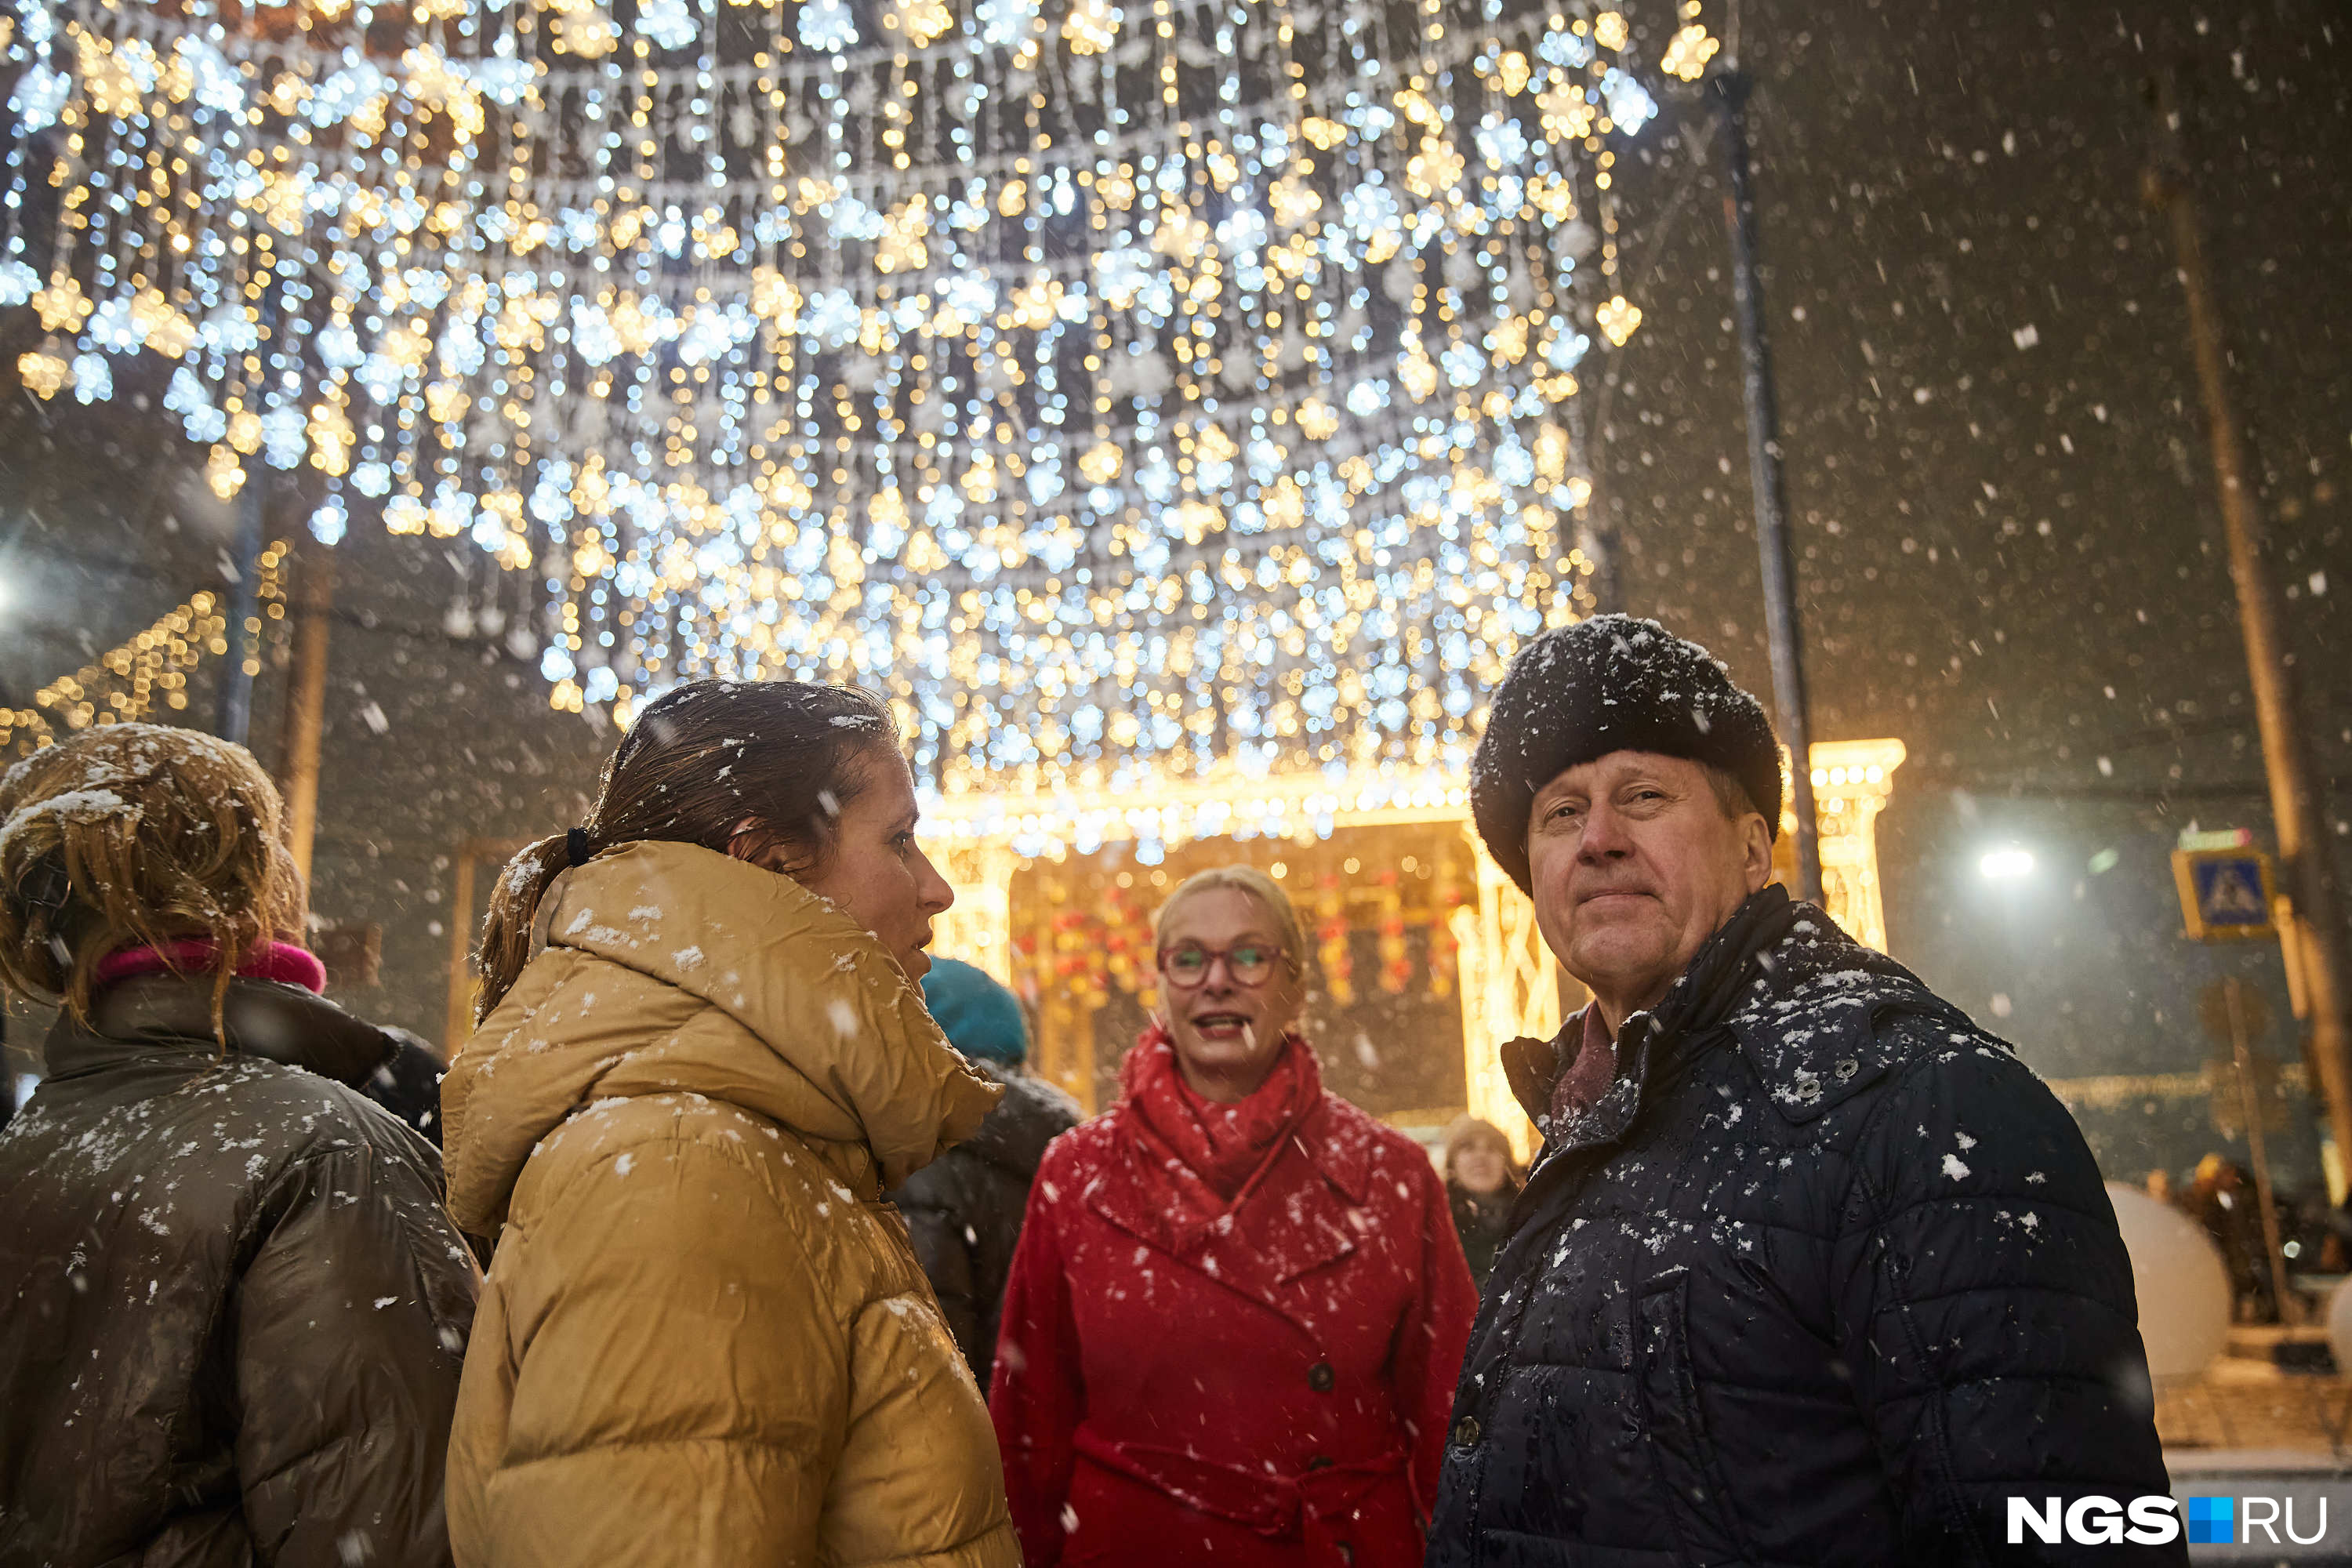 На запуске новогодней иллюминации присутствовали мэр Новосибирска Анатолий Локоть и вице-мэр Анна Терешкова